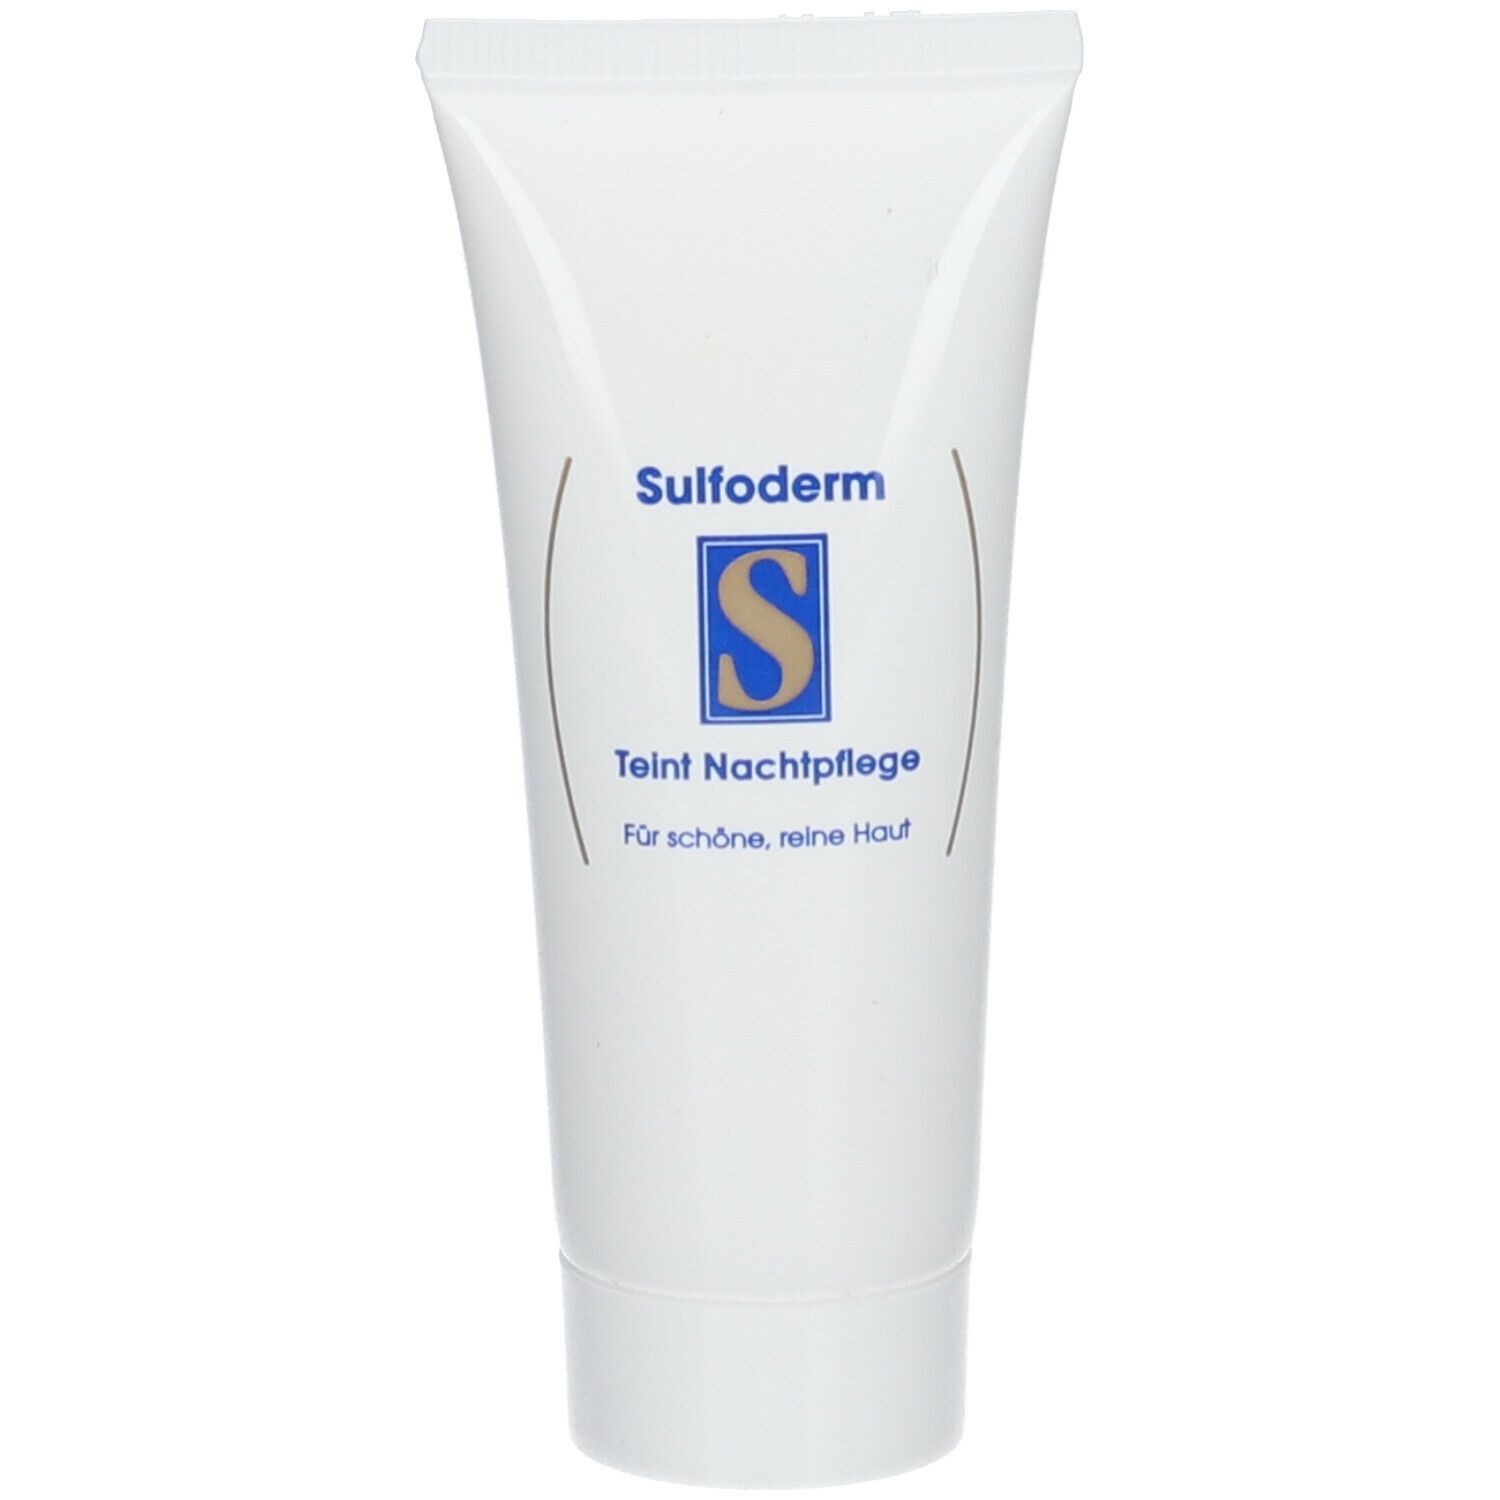 Sulfoderm® S Teint Nachtpflege parfümfrei